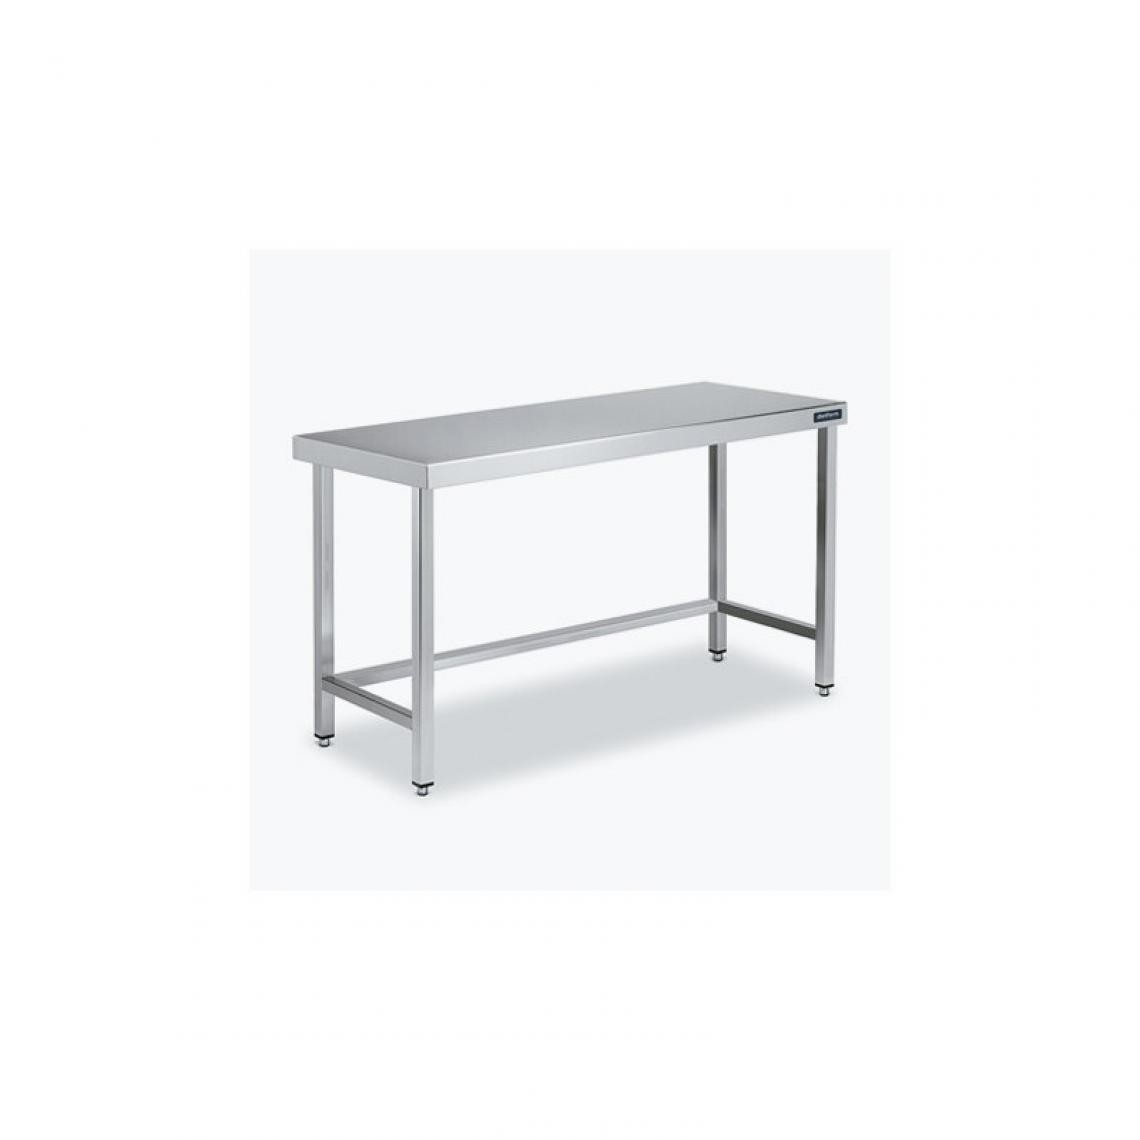 DISTFORM - Table Centrale 600x500 avec Renforts - Distform - Inox 18/101500x500x850mm - Tables à manger